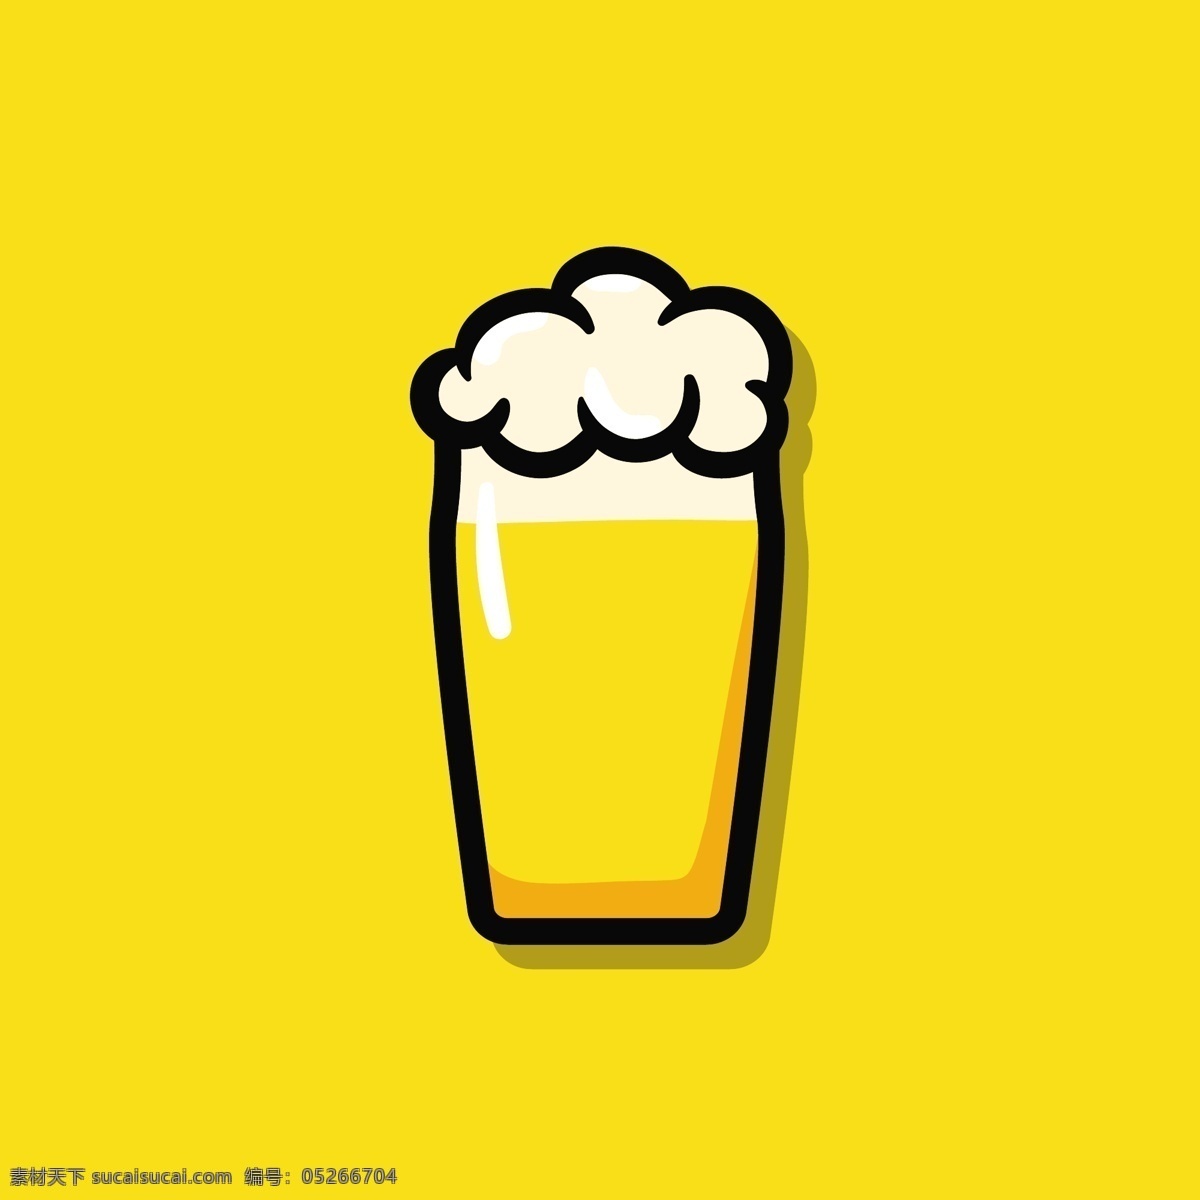 手绘啤酒杯 手绘 卡通 酒杯 啤酒杯 啤酒素材 卡通设计